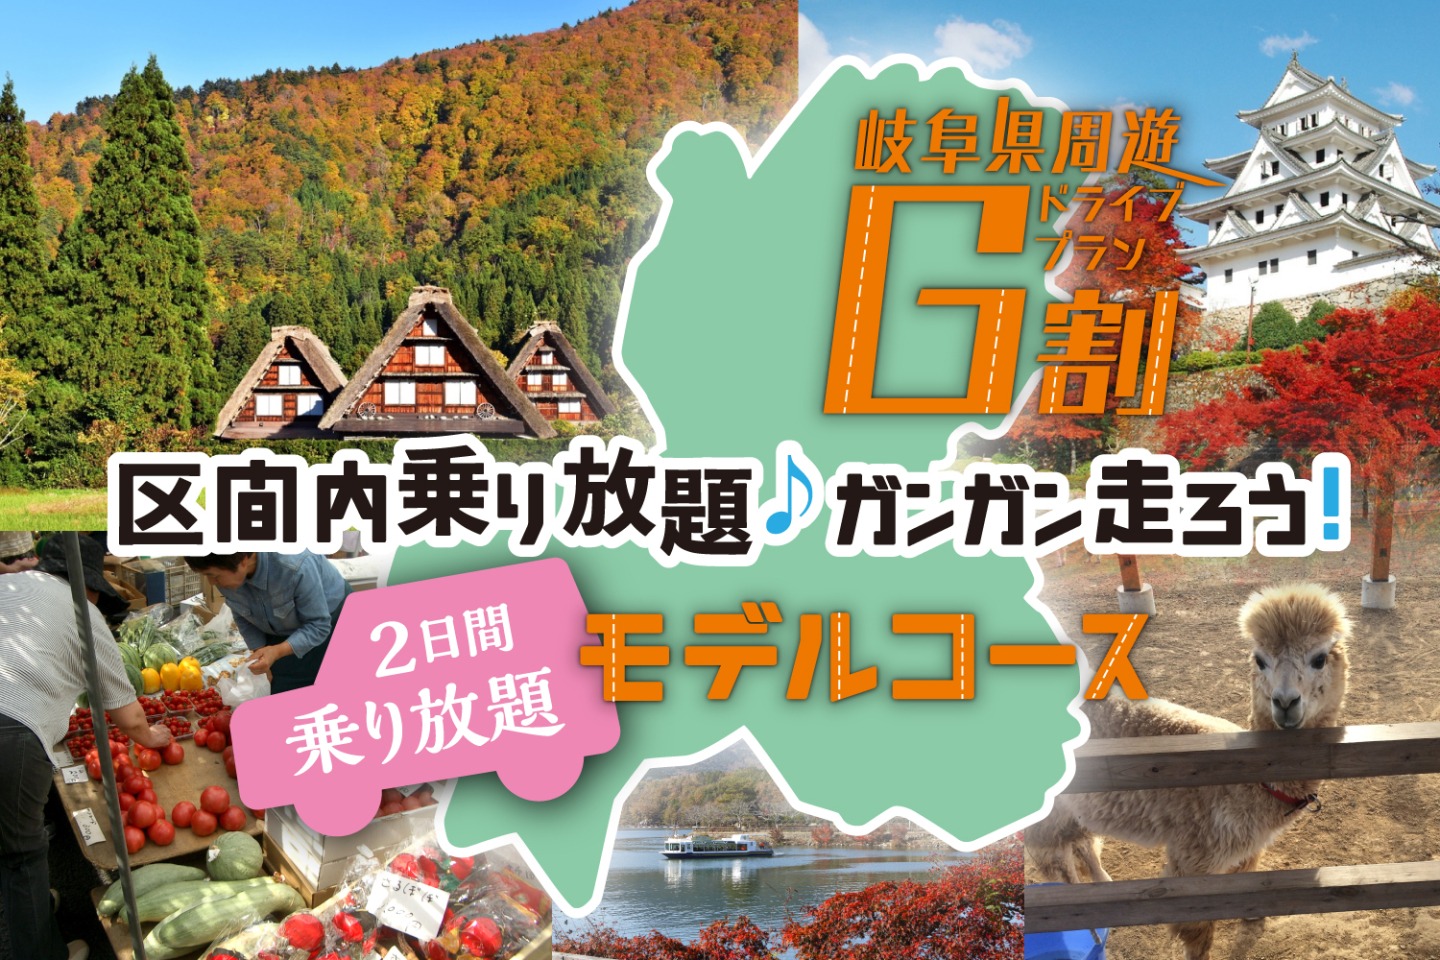 “G割”で行こう！秋の岐阜県 周遊の旅【2日間】